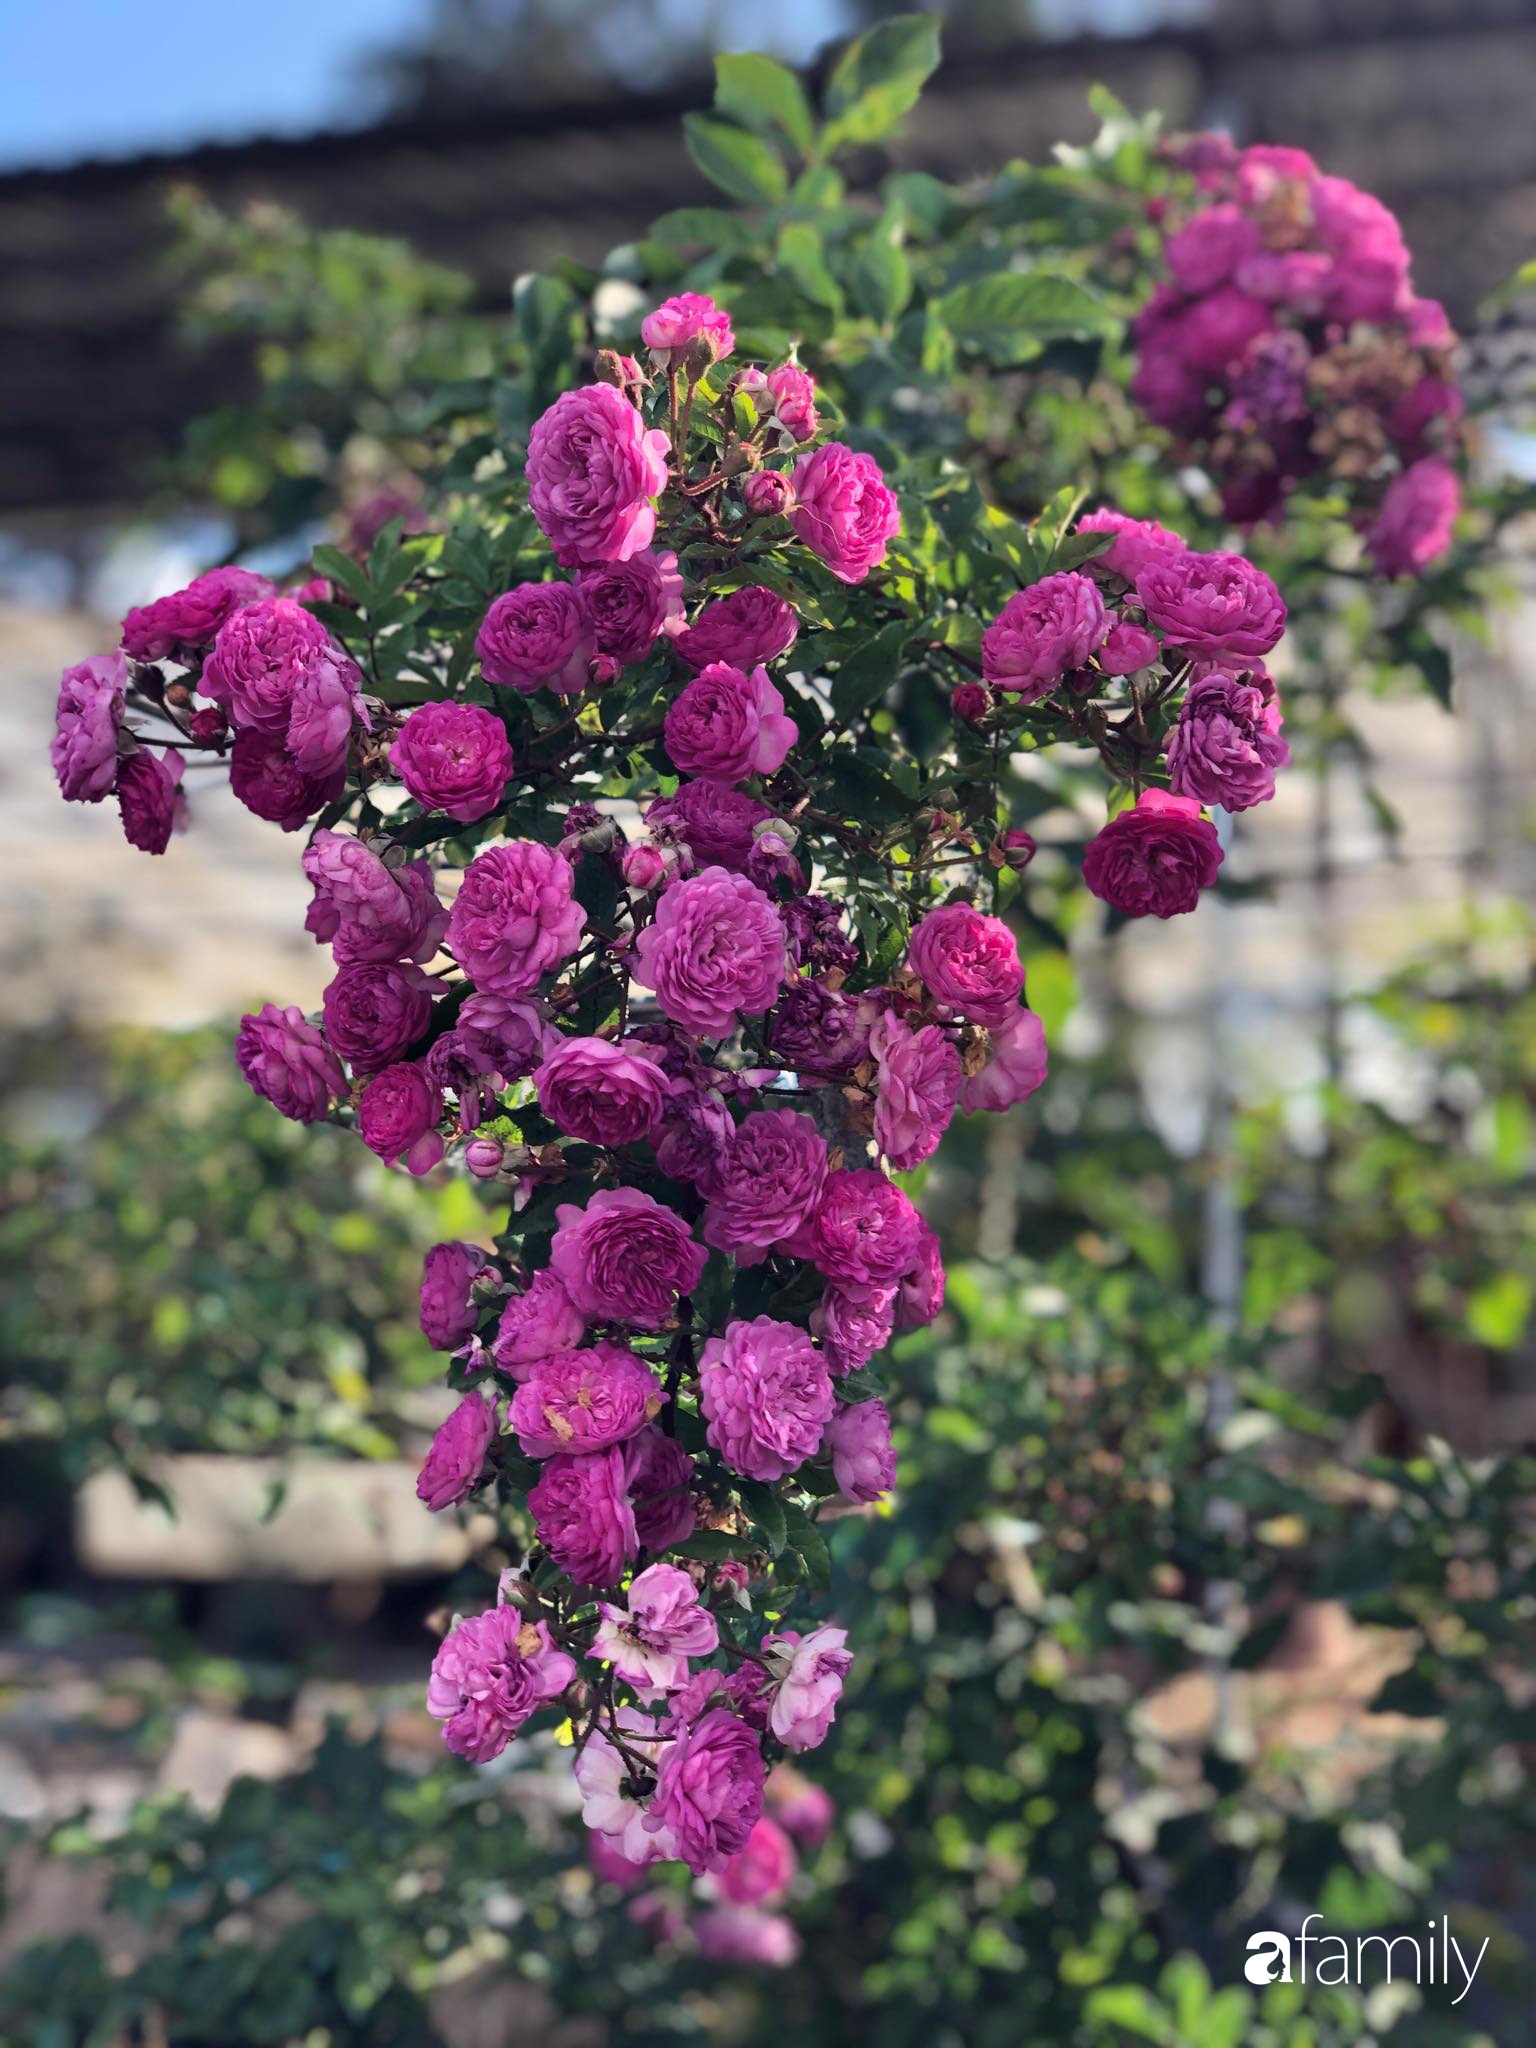 Ngắm vườn hồng bonsai tiền tỉ rực rỡ tỏa hương trên đồi núi ở Đà Lạt - Ảnh 11.